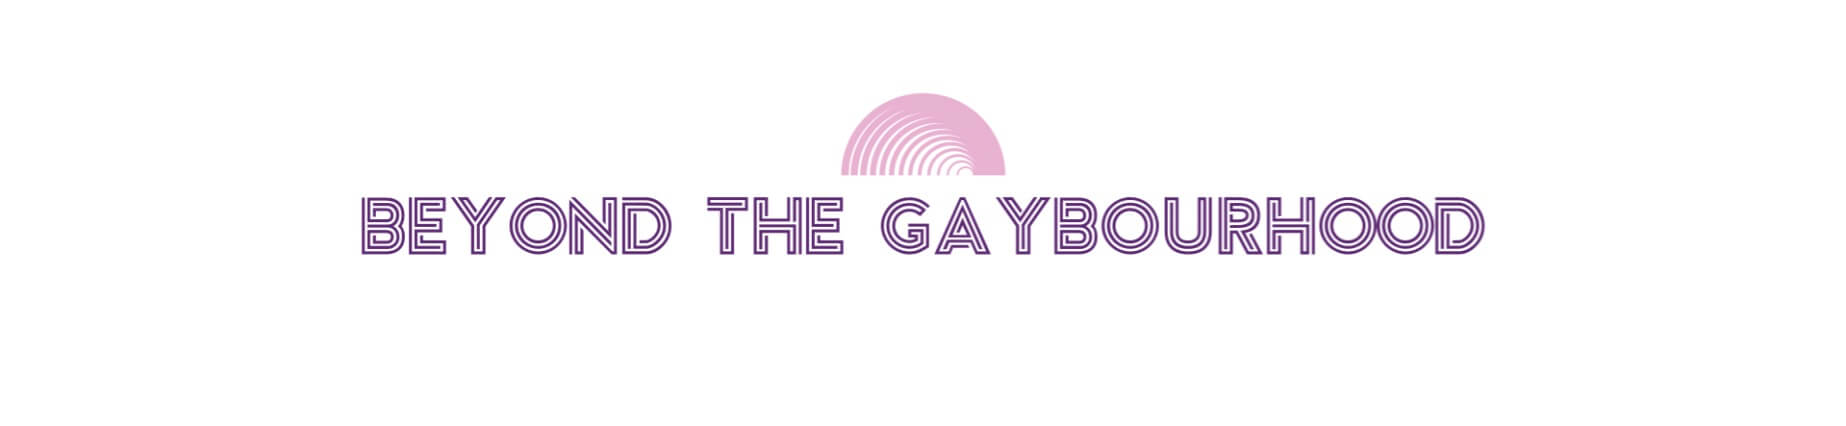 Beyond the Gaybourhood